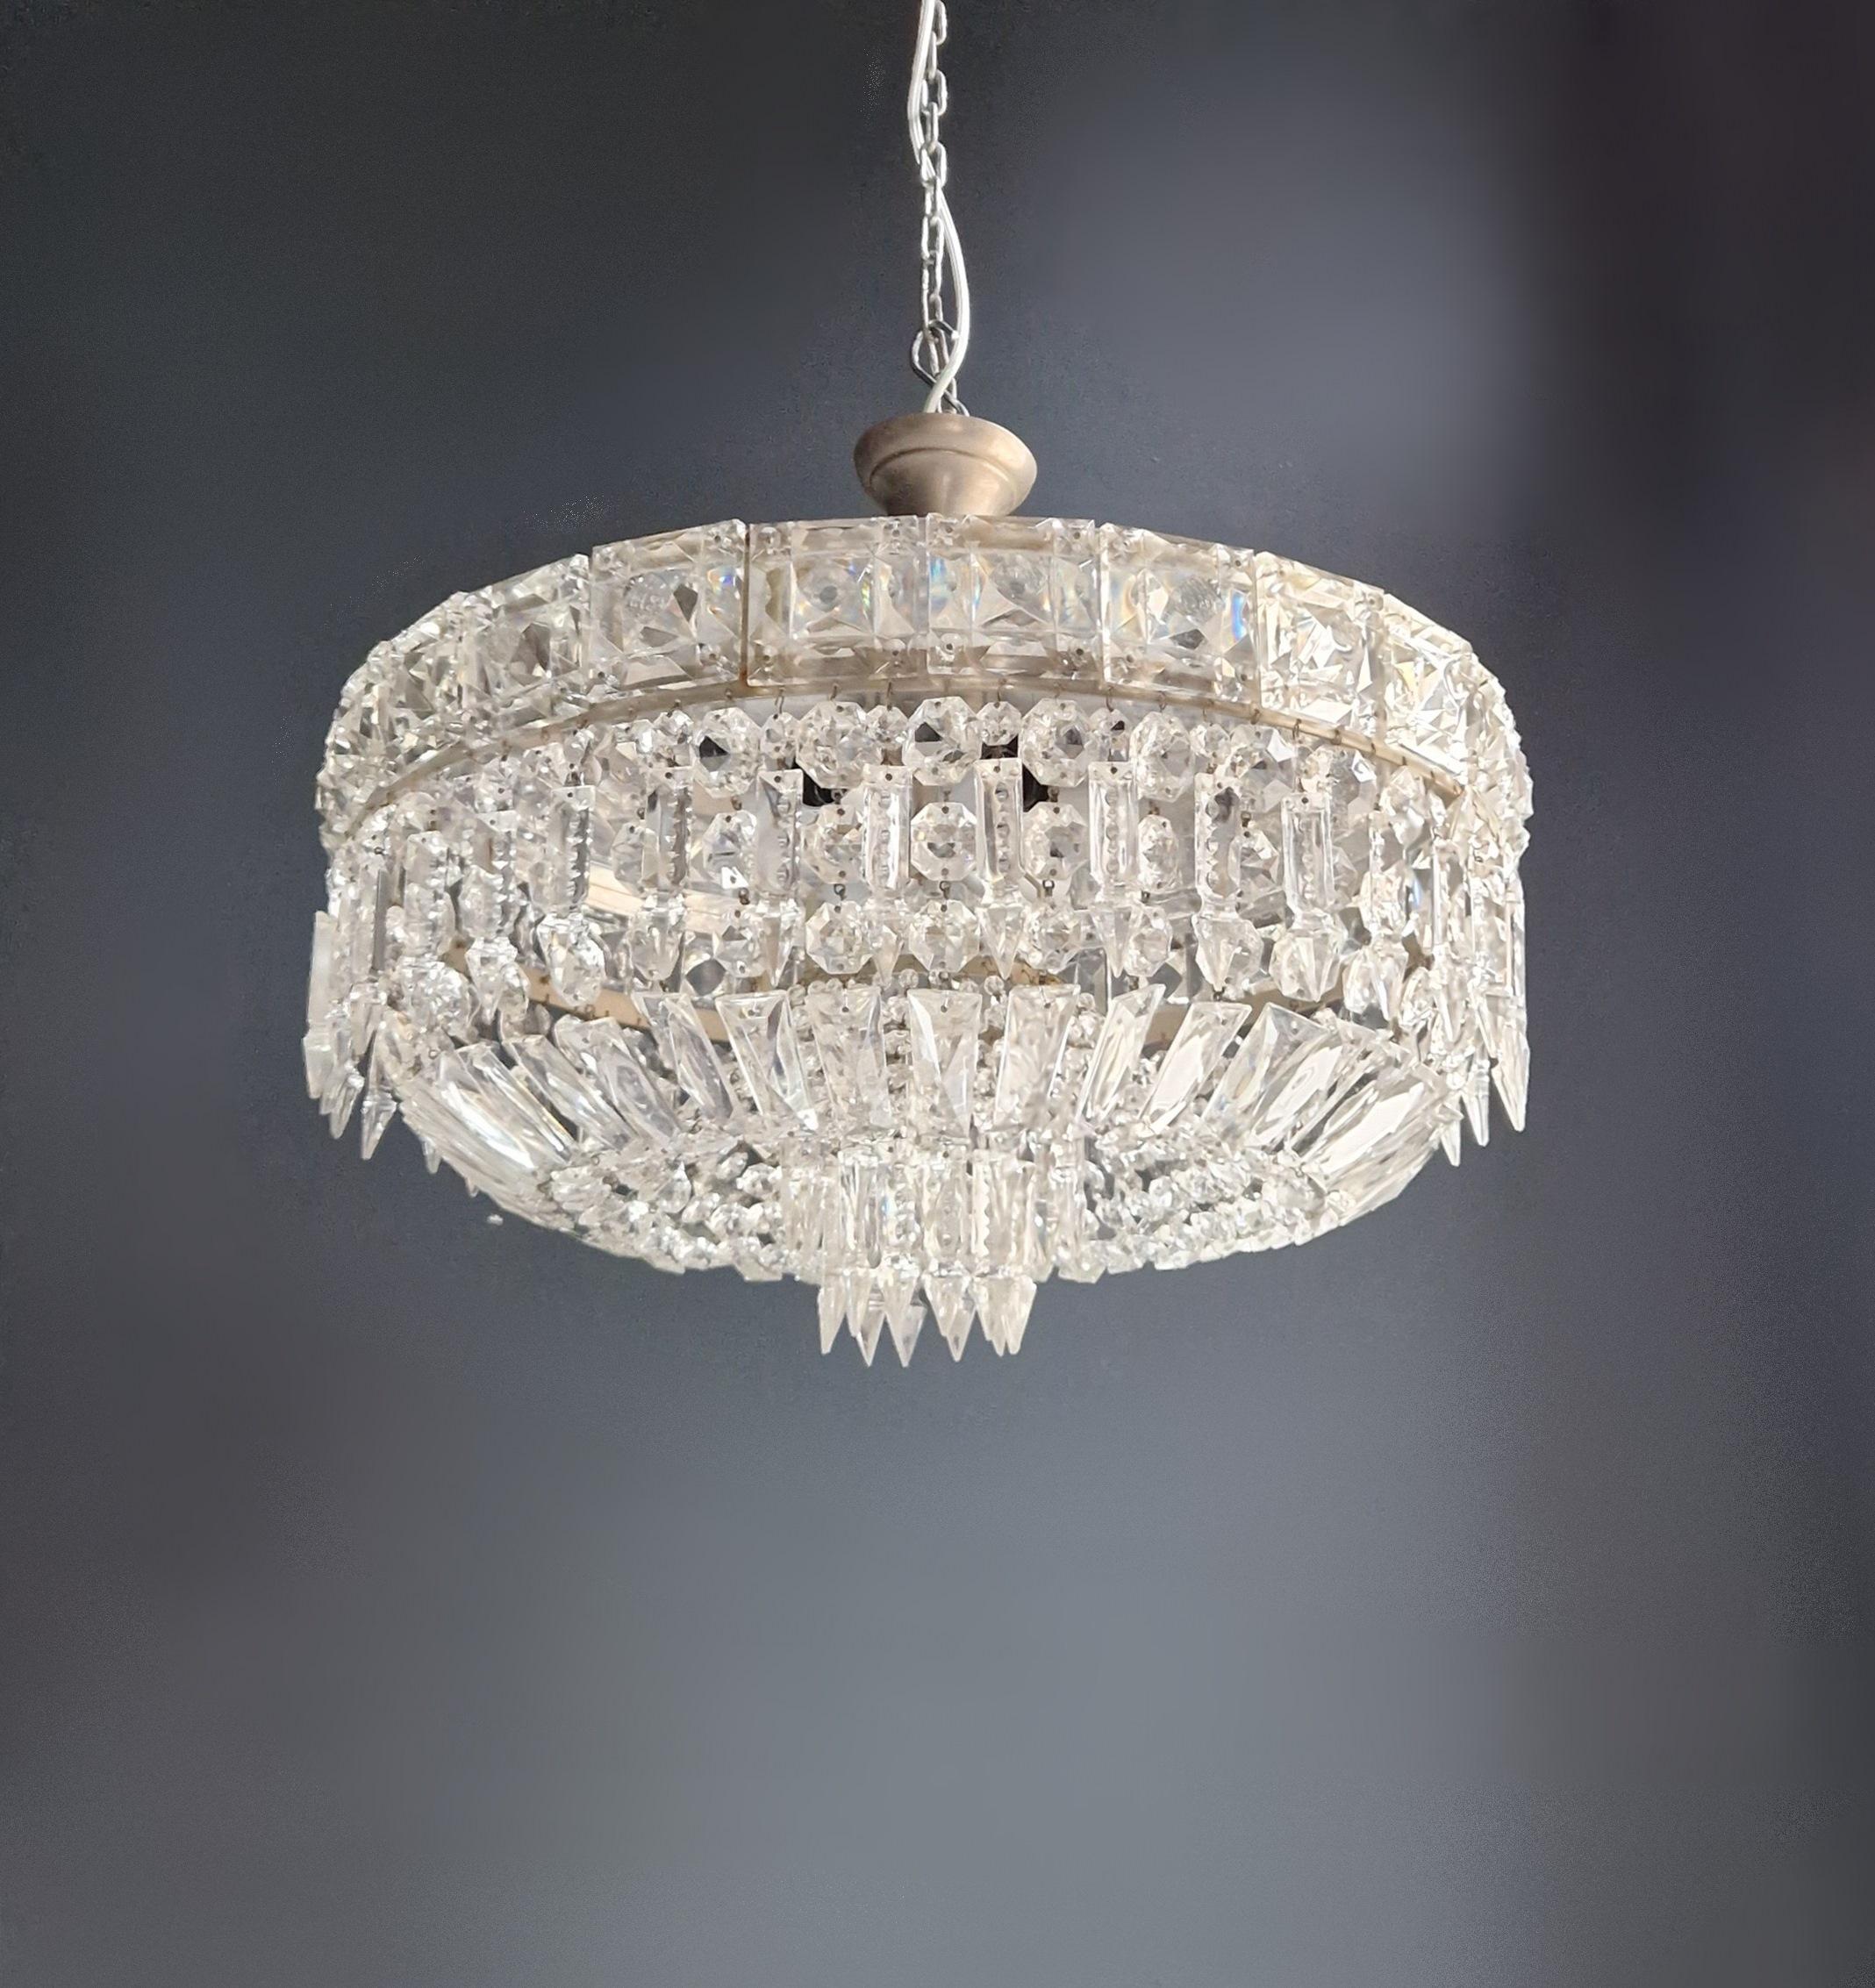 Wir präsentieren eine exquisite Art Deco Low Plafonnier Silver Crystal Chandelier Lustre Ceiling Lamp, die den zeitlosen Charme antiker Handwerkskunst versprüht. Dieser alte Kronleuchter wurde in Berlin mit viel Liebe und Sachverstand restauriert.